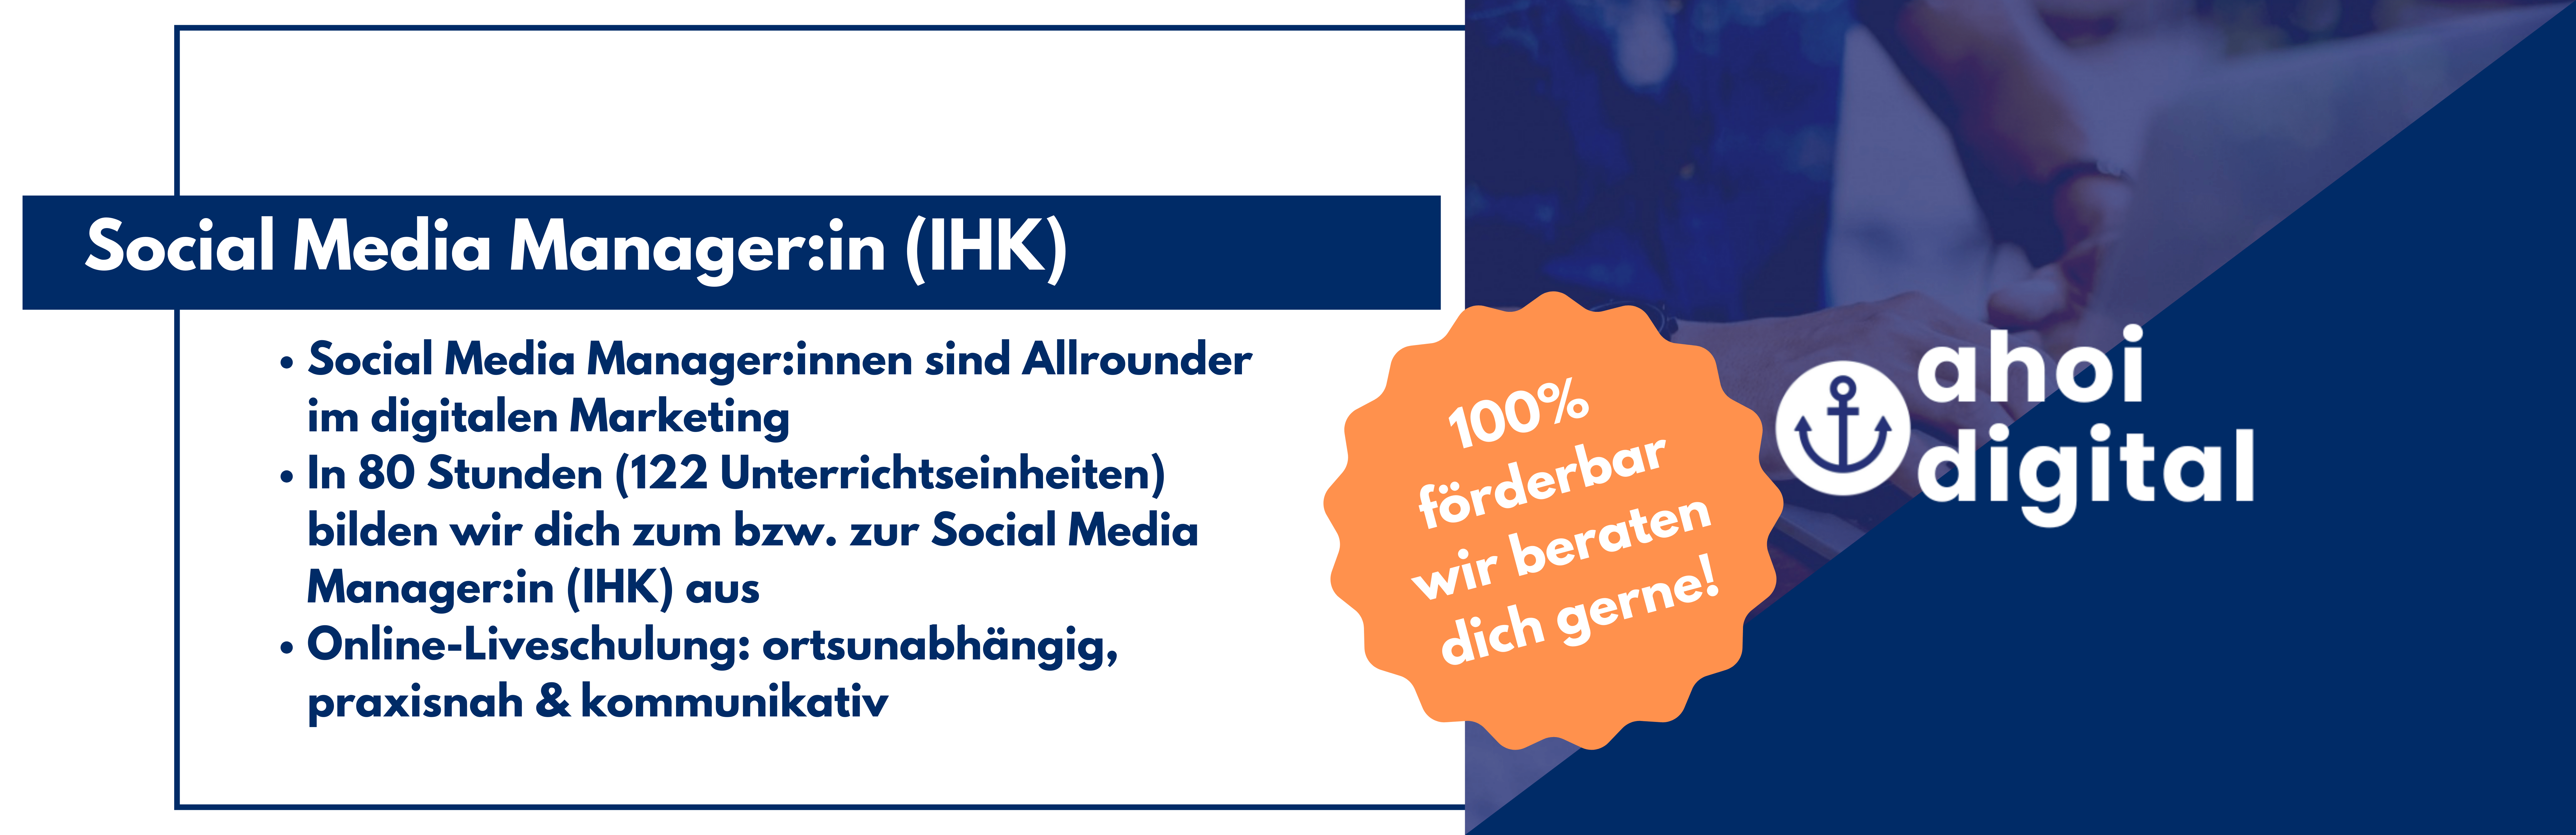 Werde Social Media Manager (IHK)! 1 - Weiterbildungsinstitut für digitales Marketing Weiterbildungsinstitut für digitales Marketing